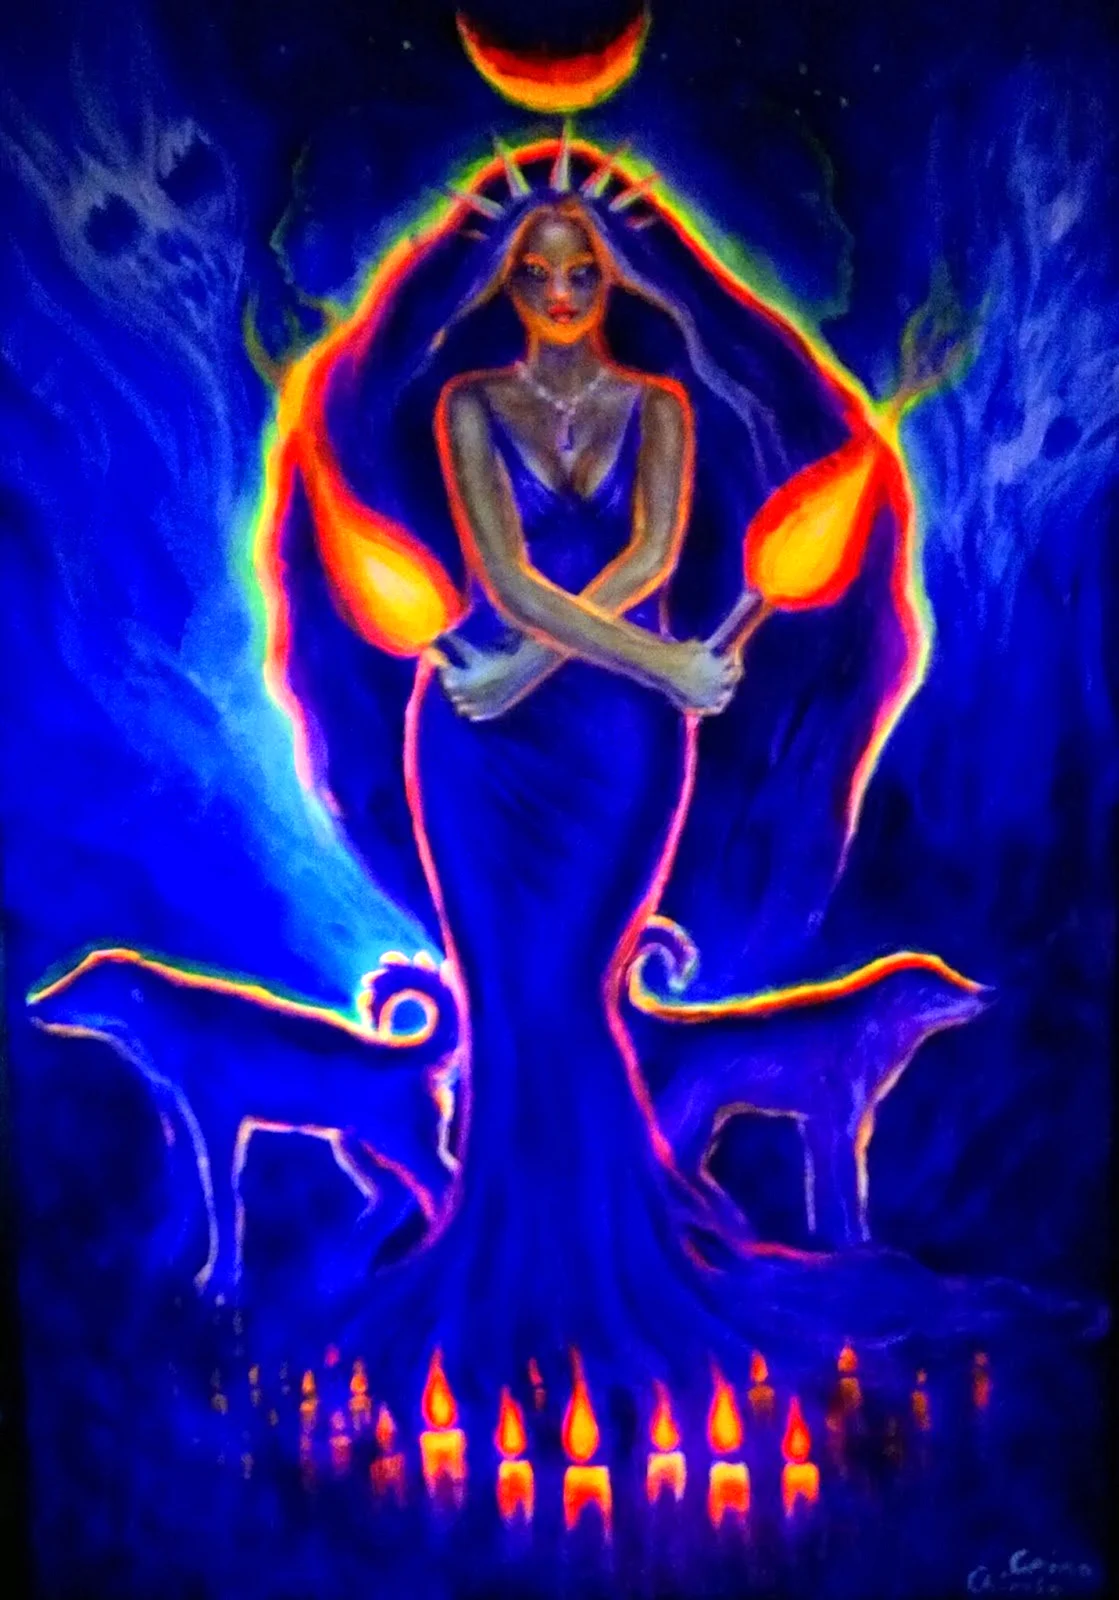 Трёхликая богиня Геката